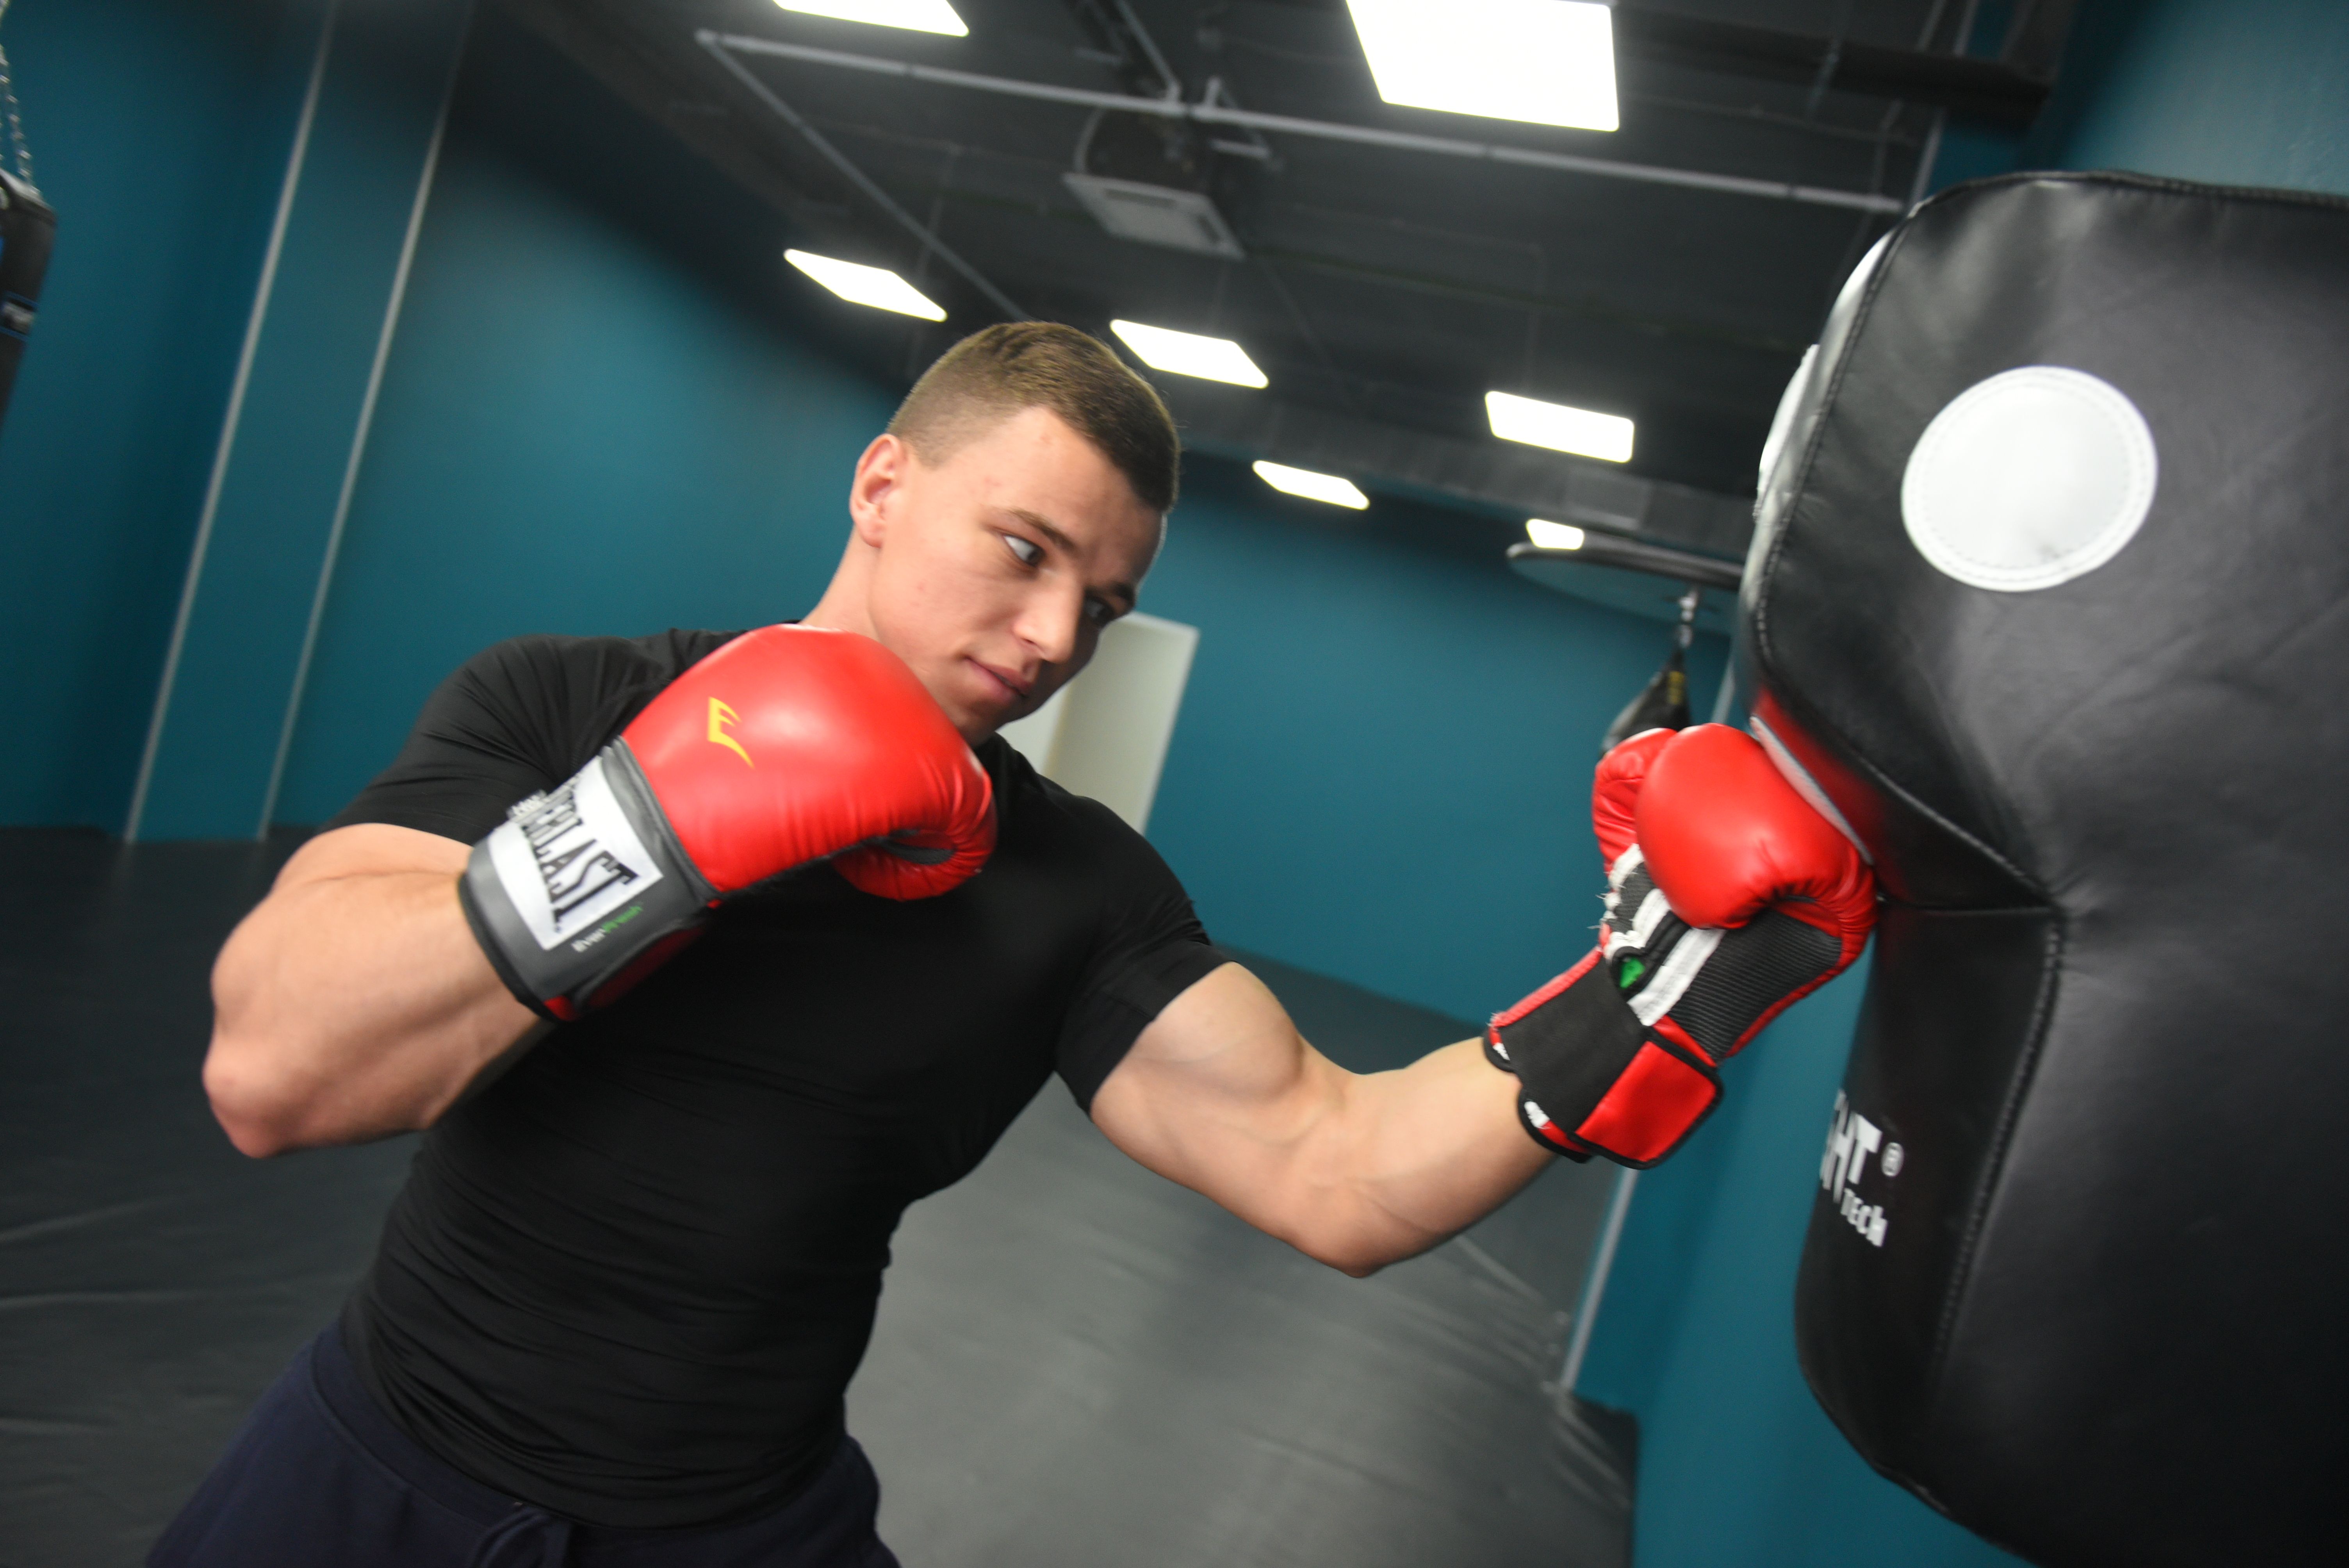 Технику удара отработали спортсмены из Троицка на виртуальной тренировке по боксу